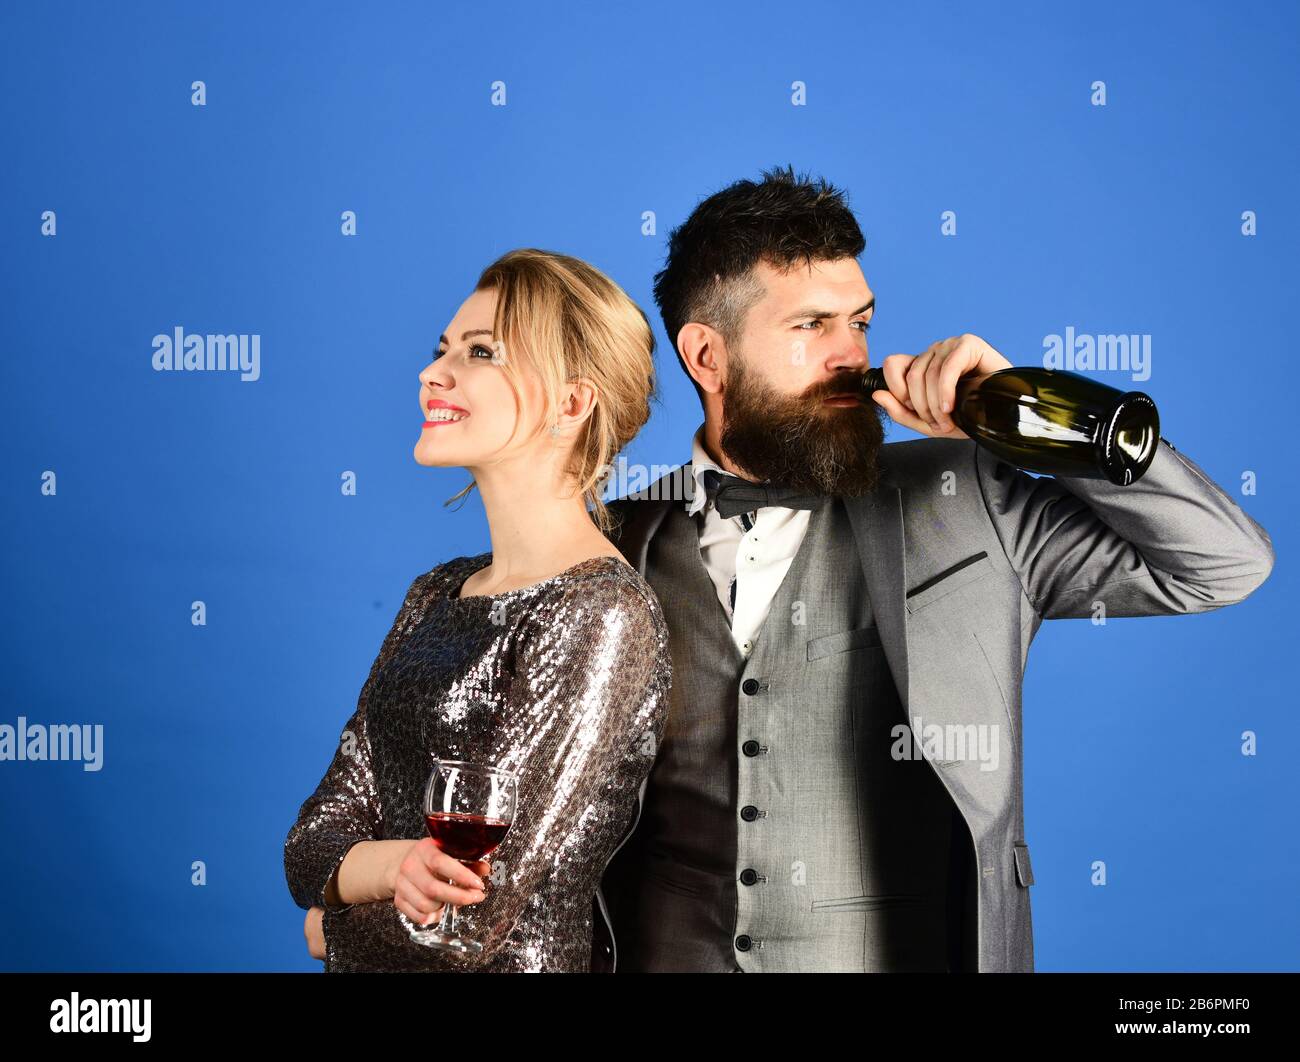 Dama y caballero sosteniendo una copa de vino y bebiendo de una botella.  Hombre con barba y mujer vestido sobre fondo azul. Pareja enamorada de la  degustación de vino italiano con caras